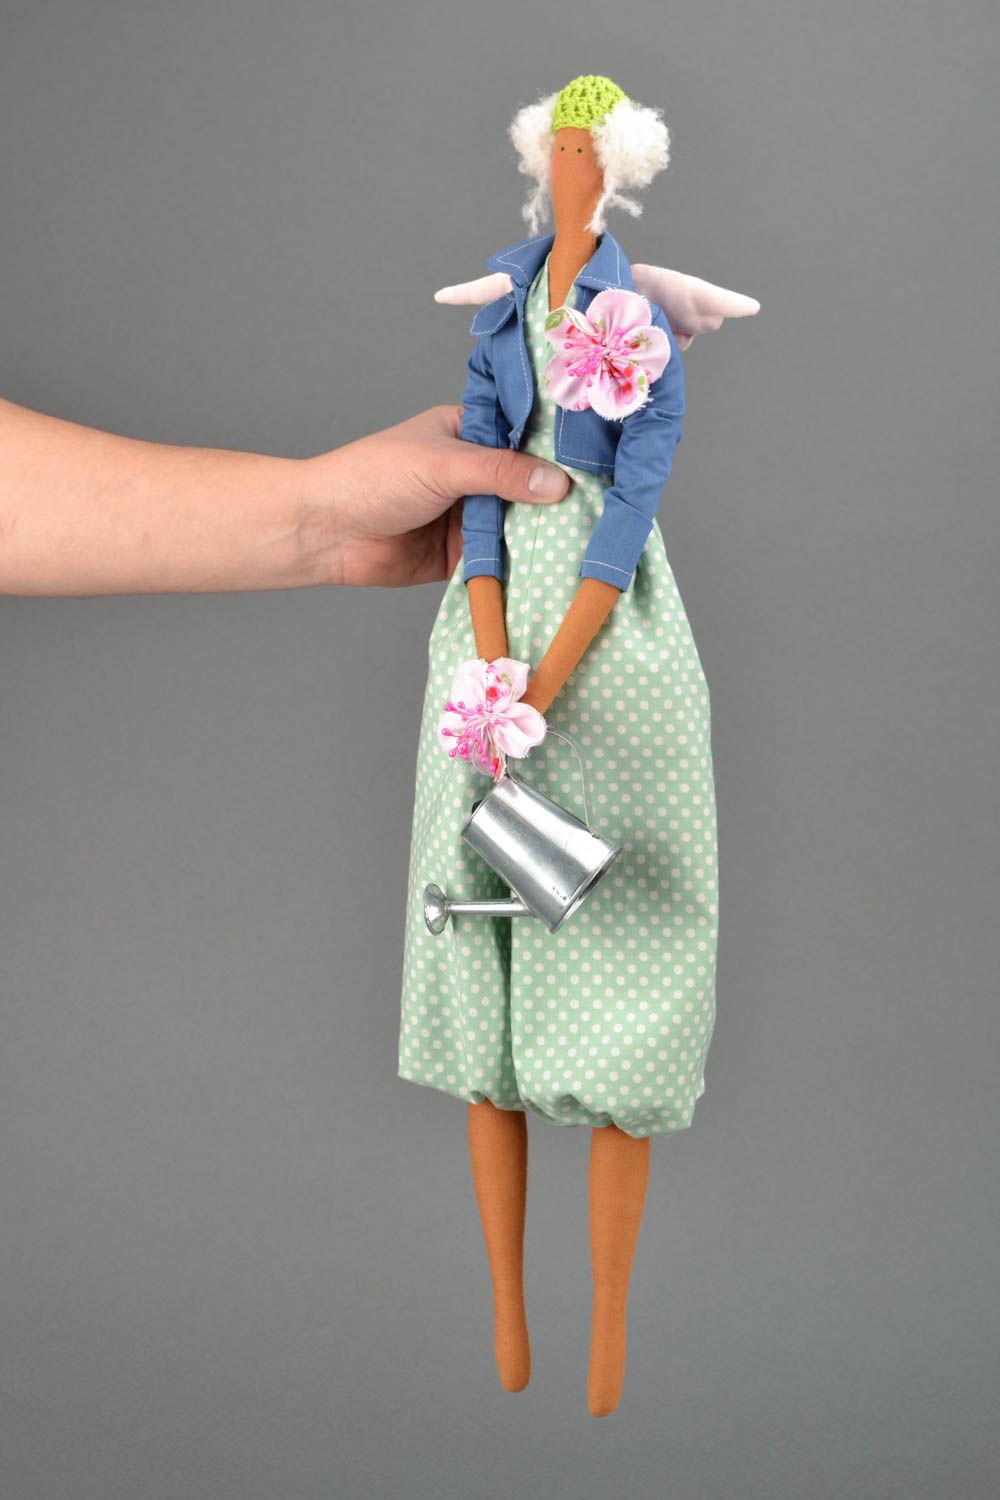 Handmade designer doll in dress photo 2